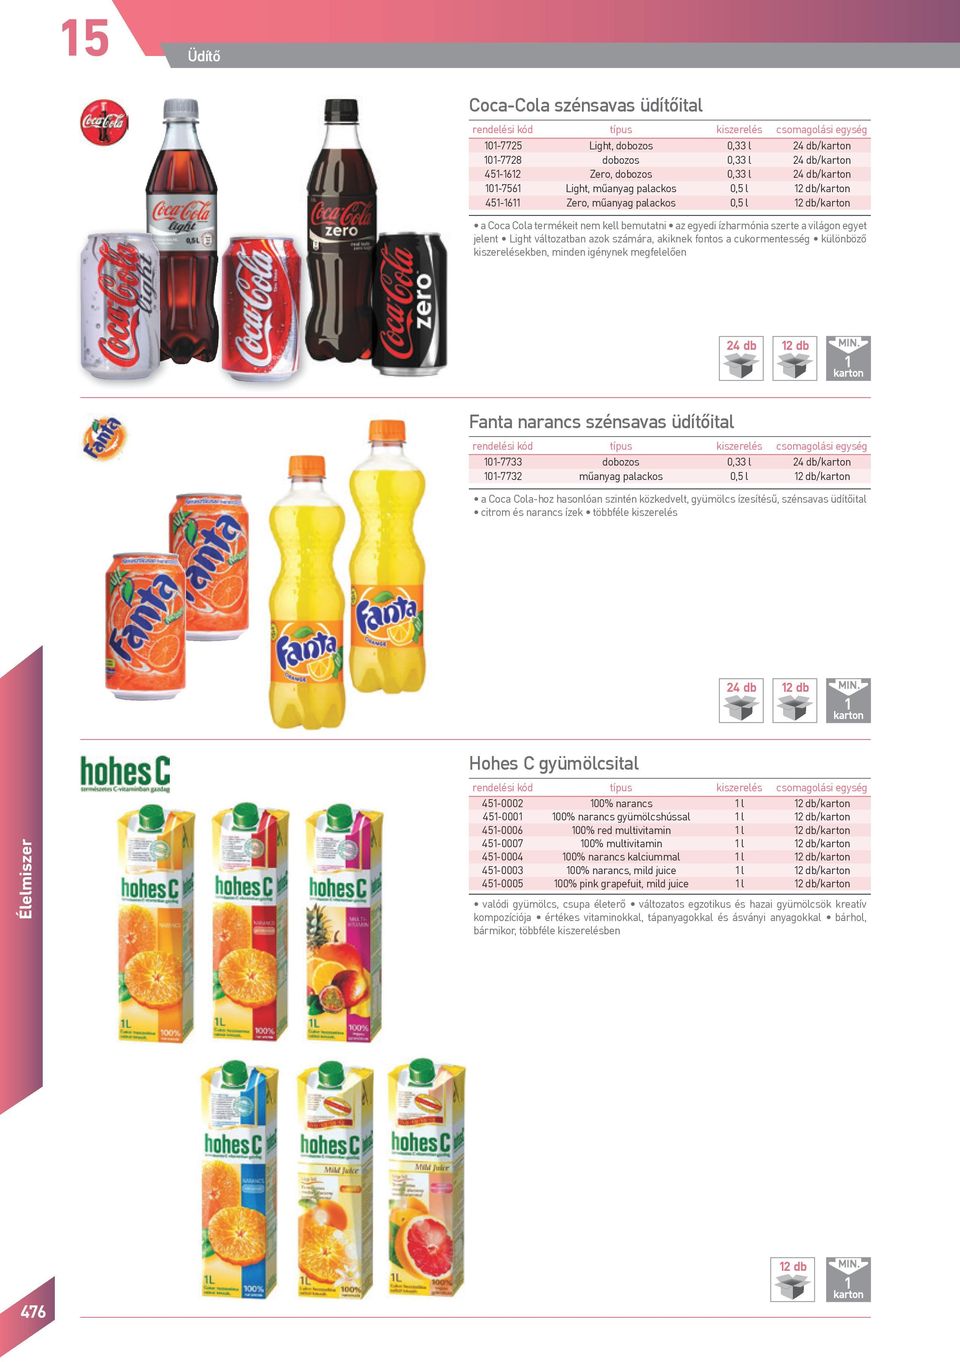 kiszerelésekben, minden igénynek megfelelően 24 db 2 db Fanta narancs szénsavas üdítőital olási egység 0-7733 os 0,33 l 24 db/ 0-7732 műanyag palackos 0,5 l 2 db/ a Coca Cola-hoz hasonlóan szintén